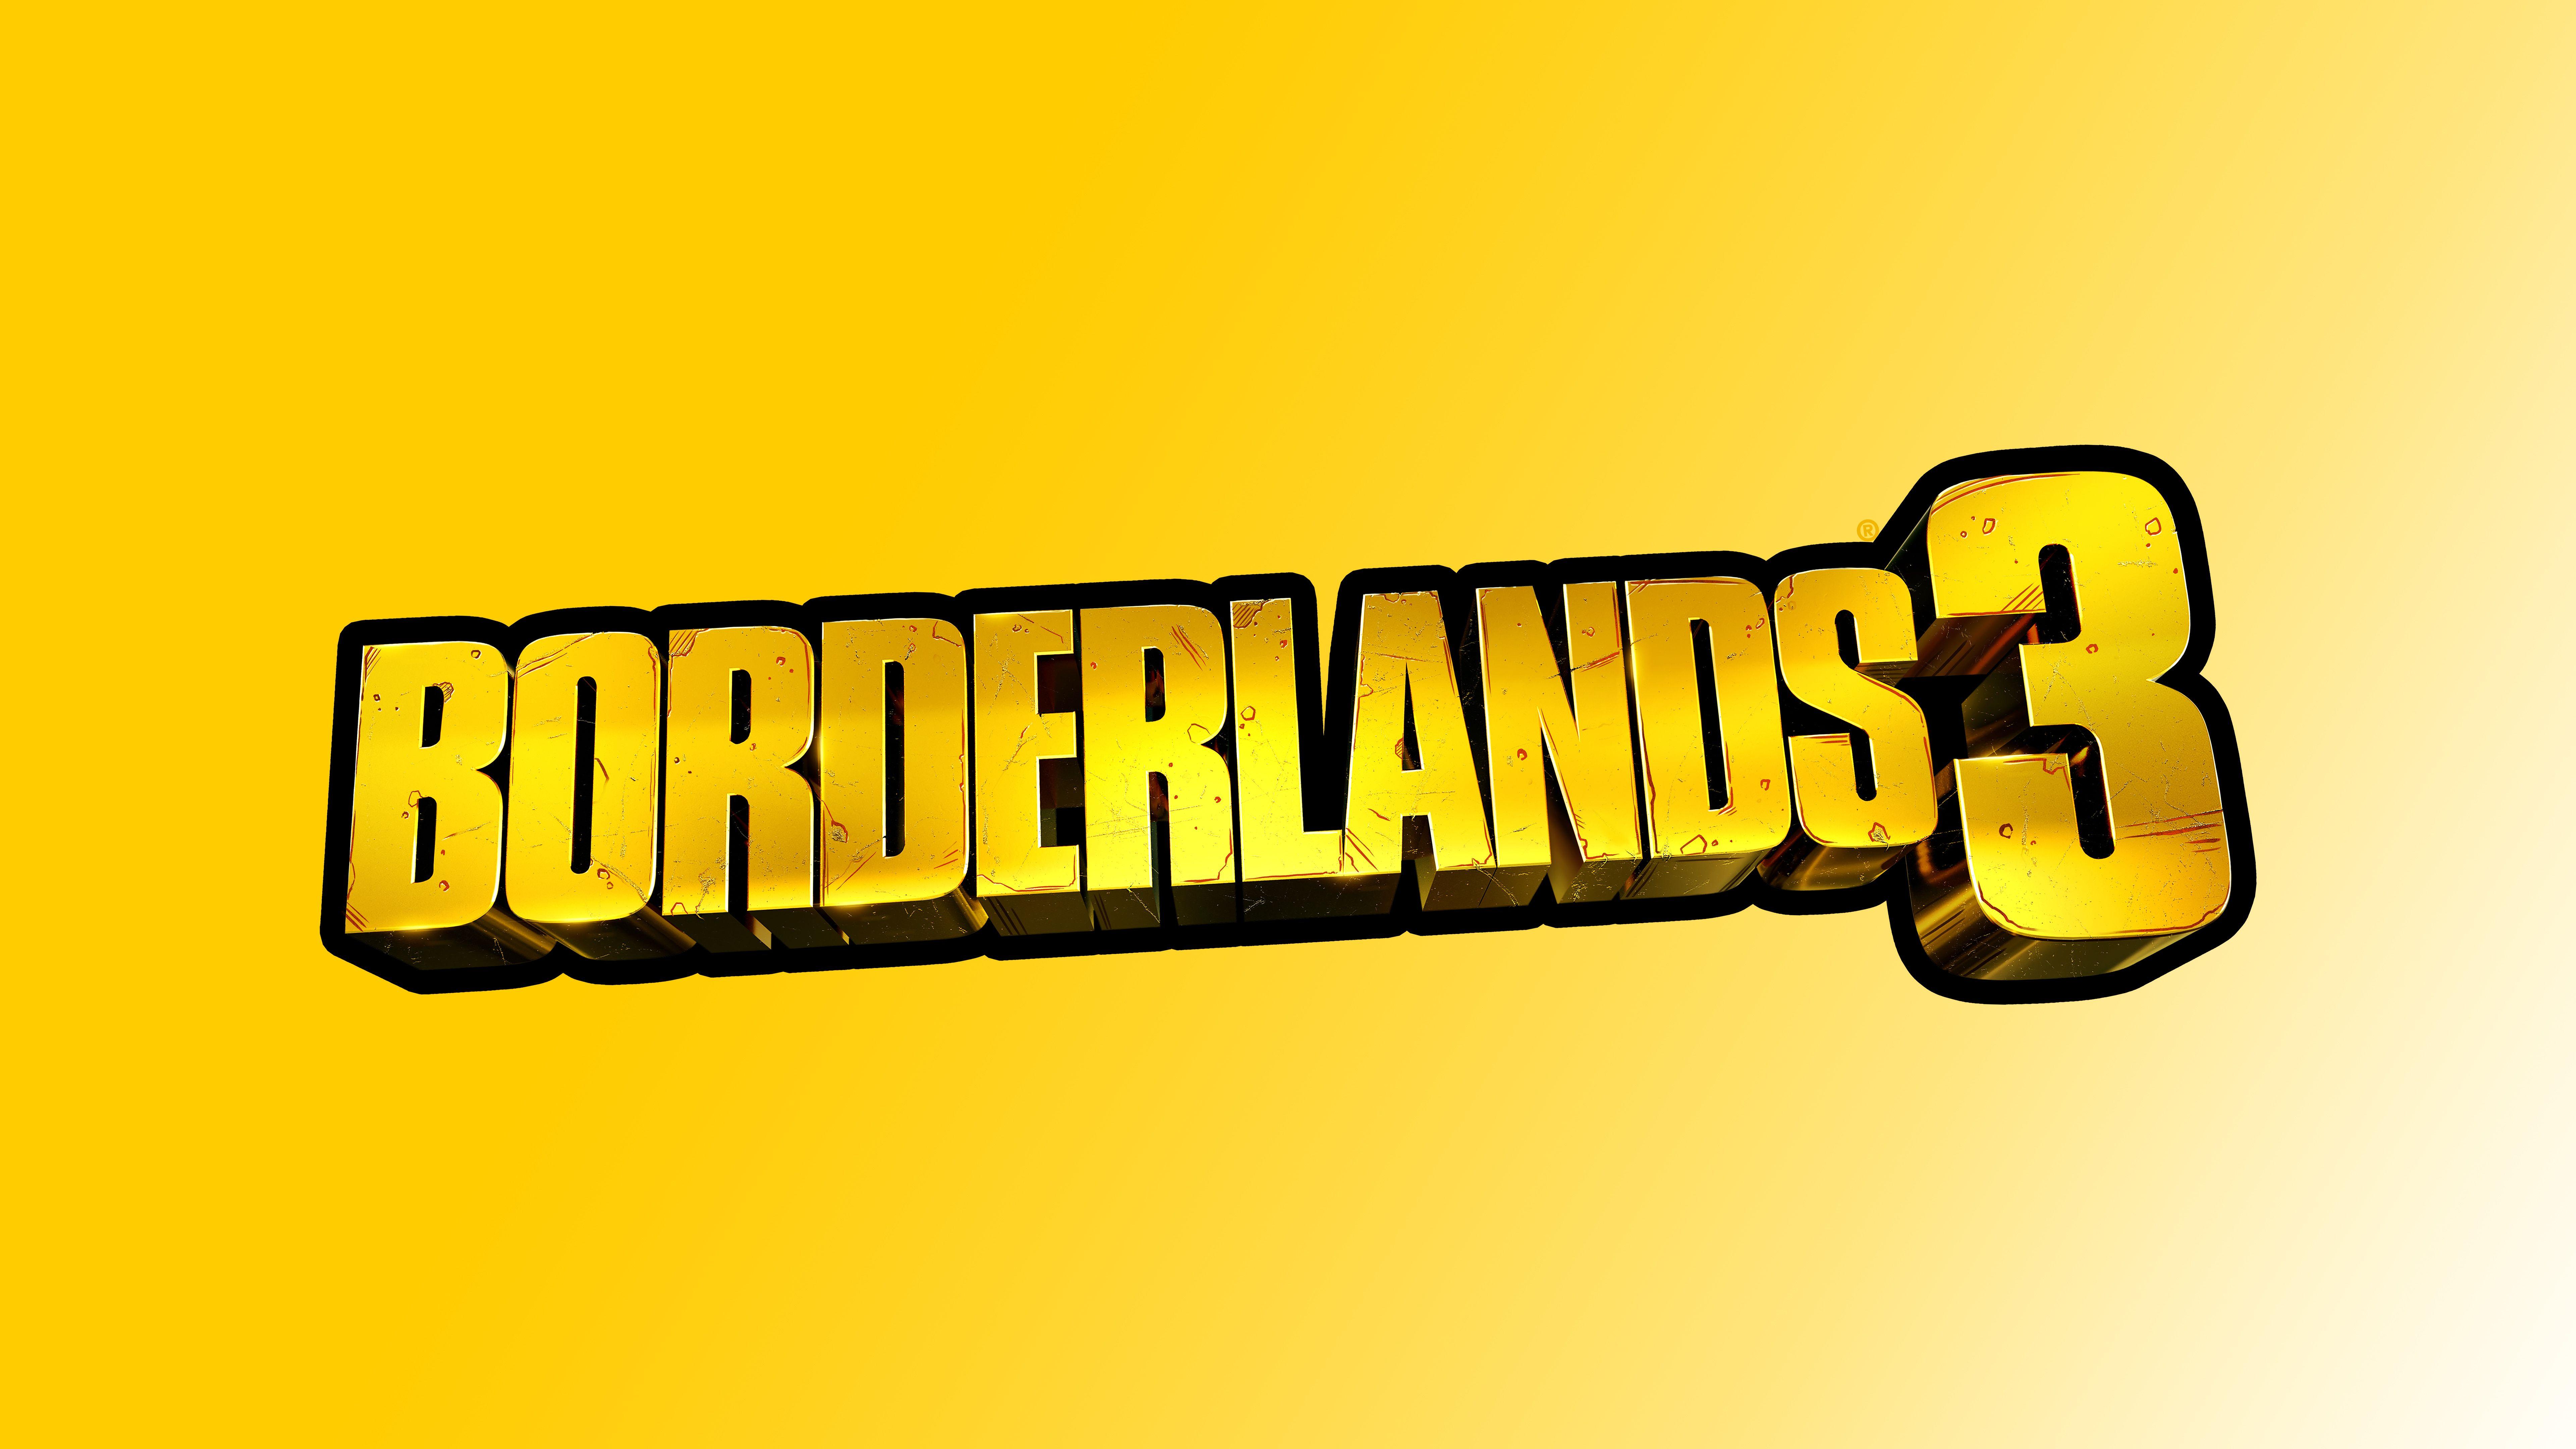 8K Logo - Borderlands 3 Logo 8k, HD Games, 4k Wallpapers, Images, Backgrounds ...